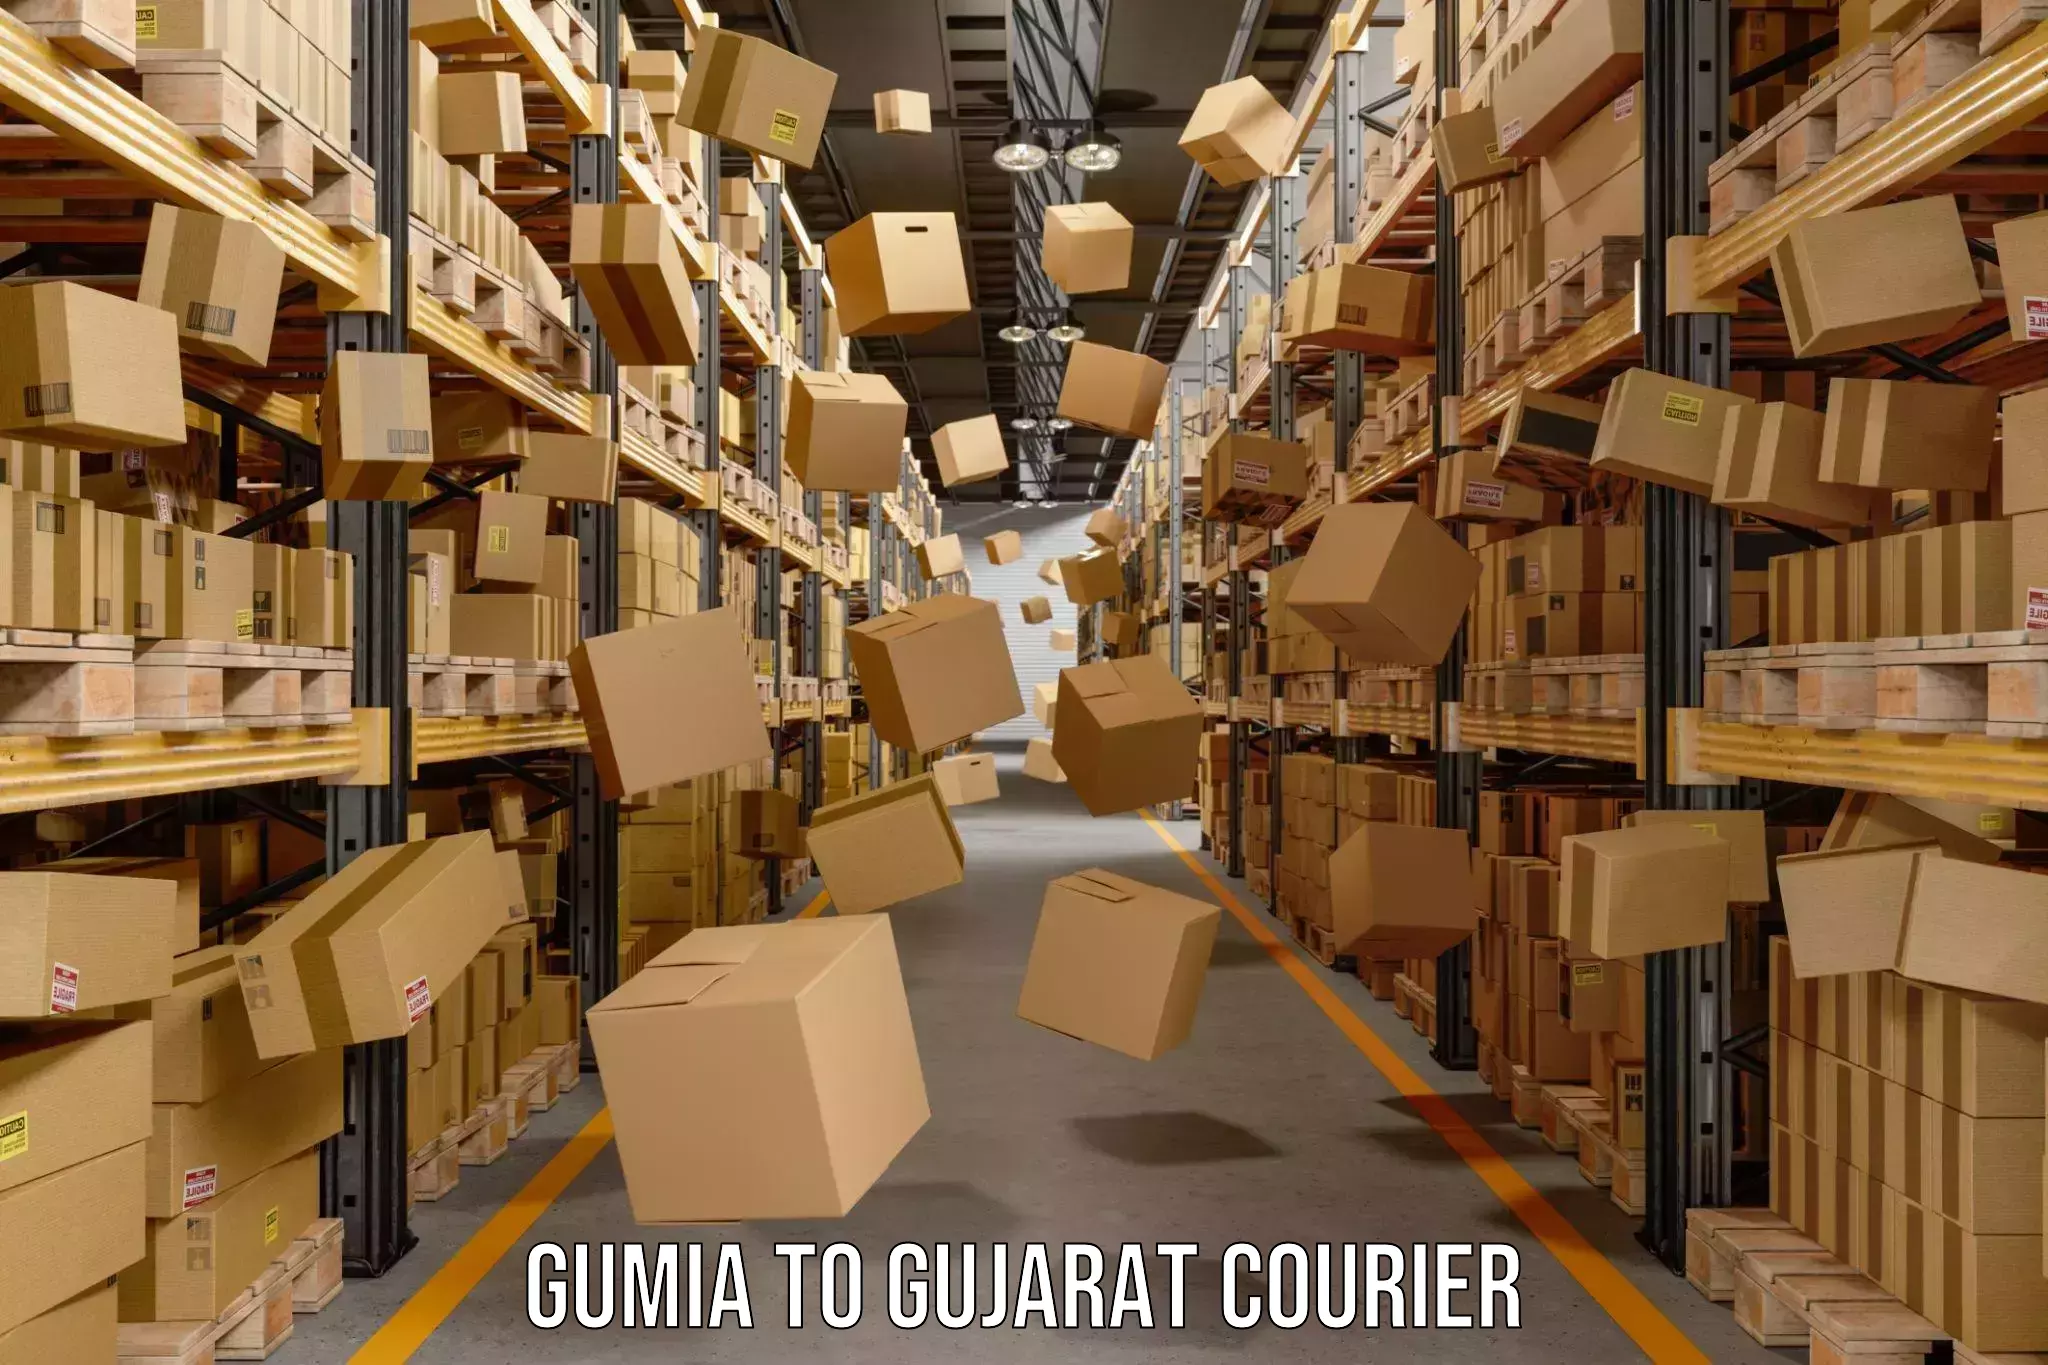 Courier service comparison Gumia to Gujarat